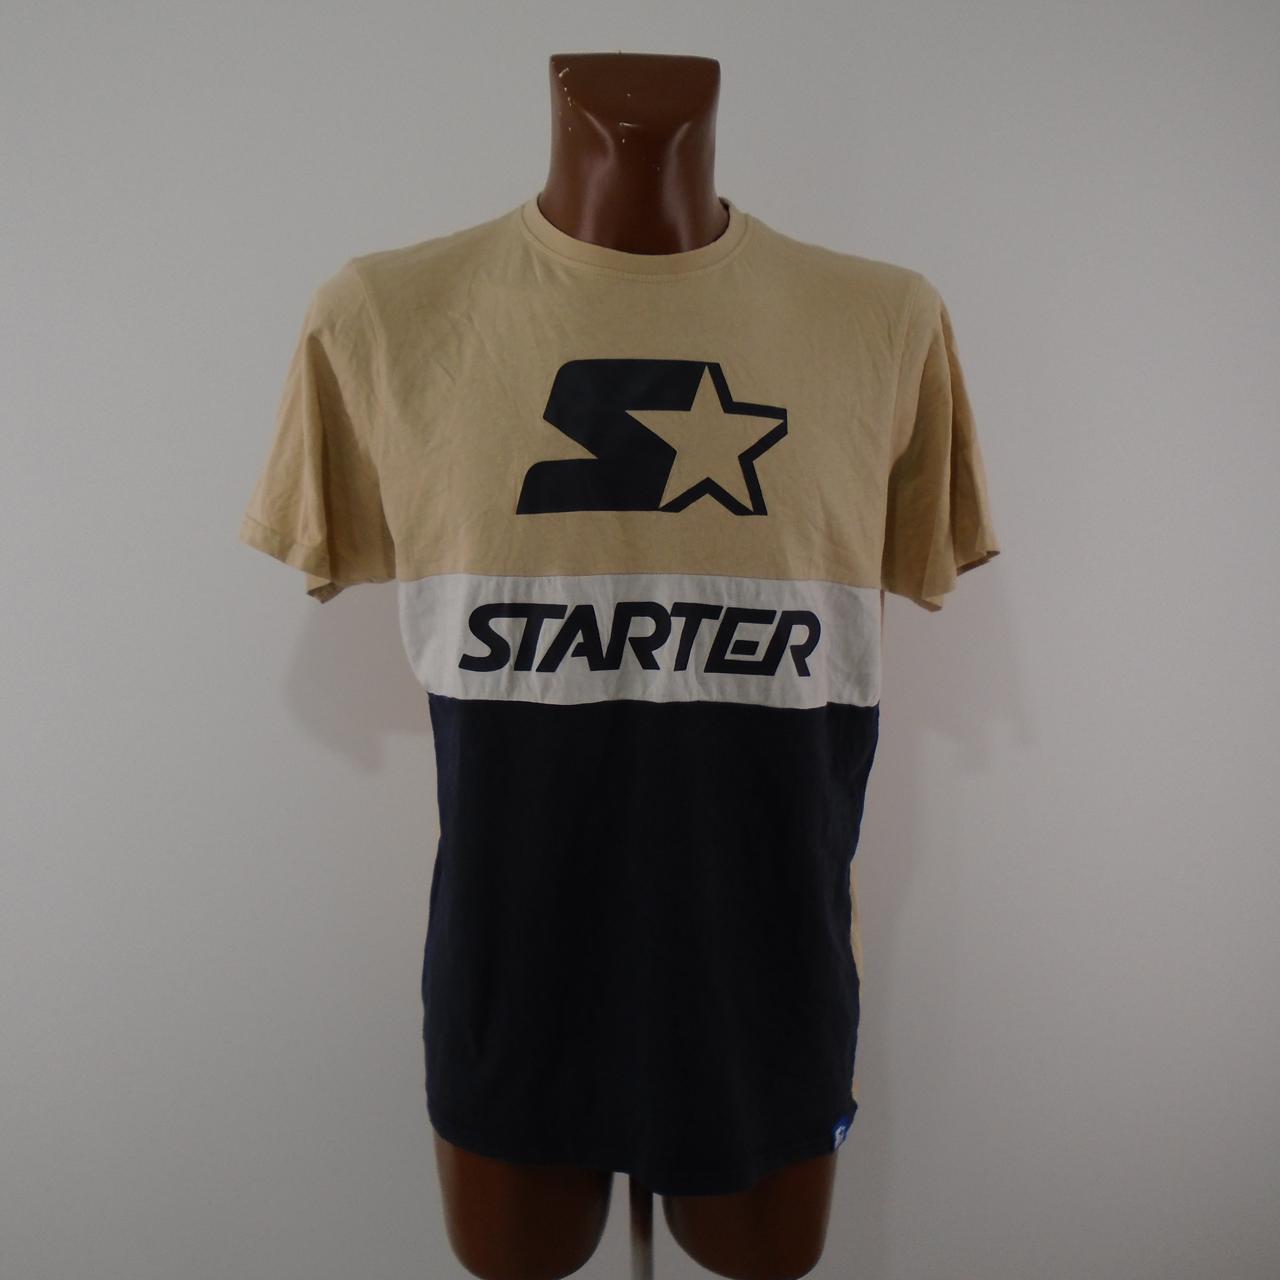 Camiseta de hombre Starter.  Multicolor.  L.Usado.  Bien